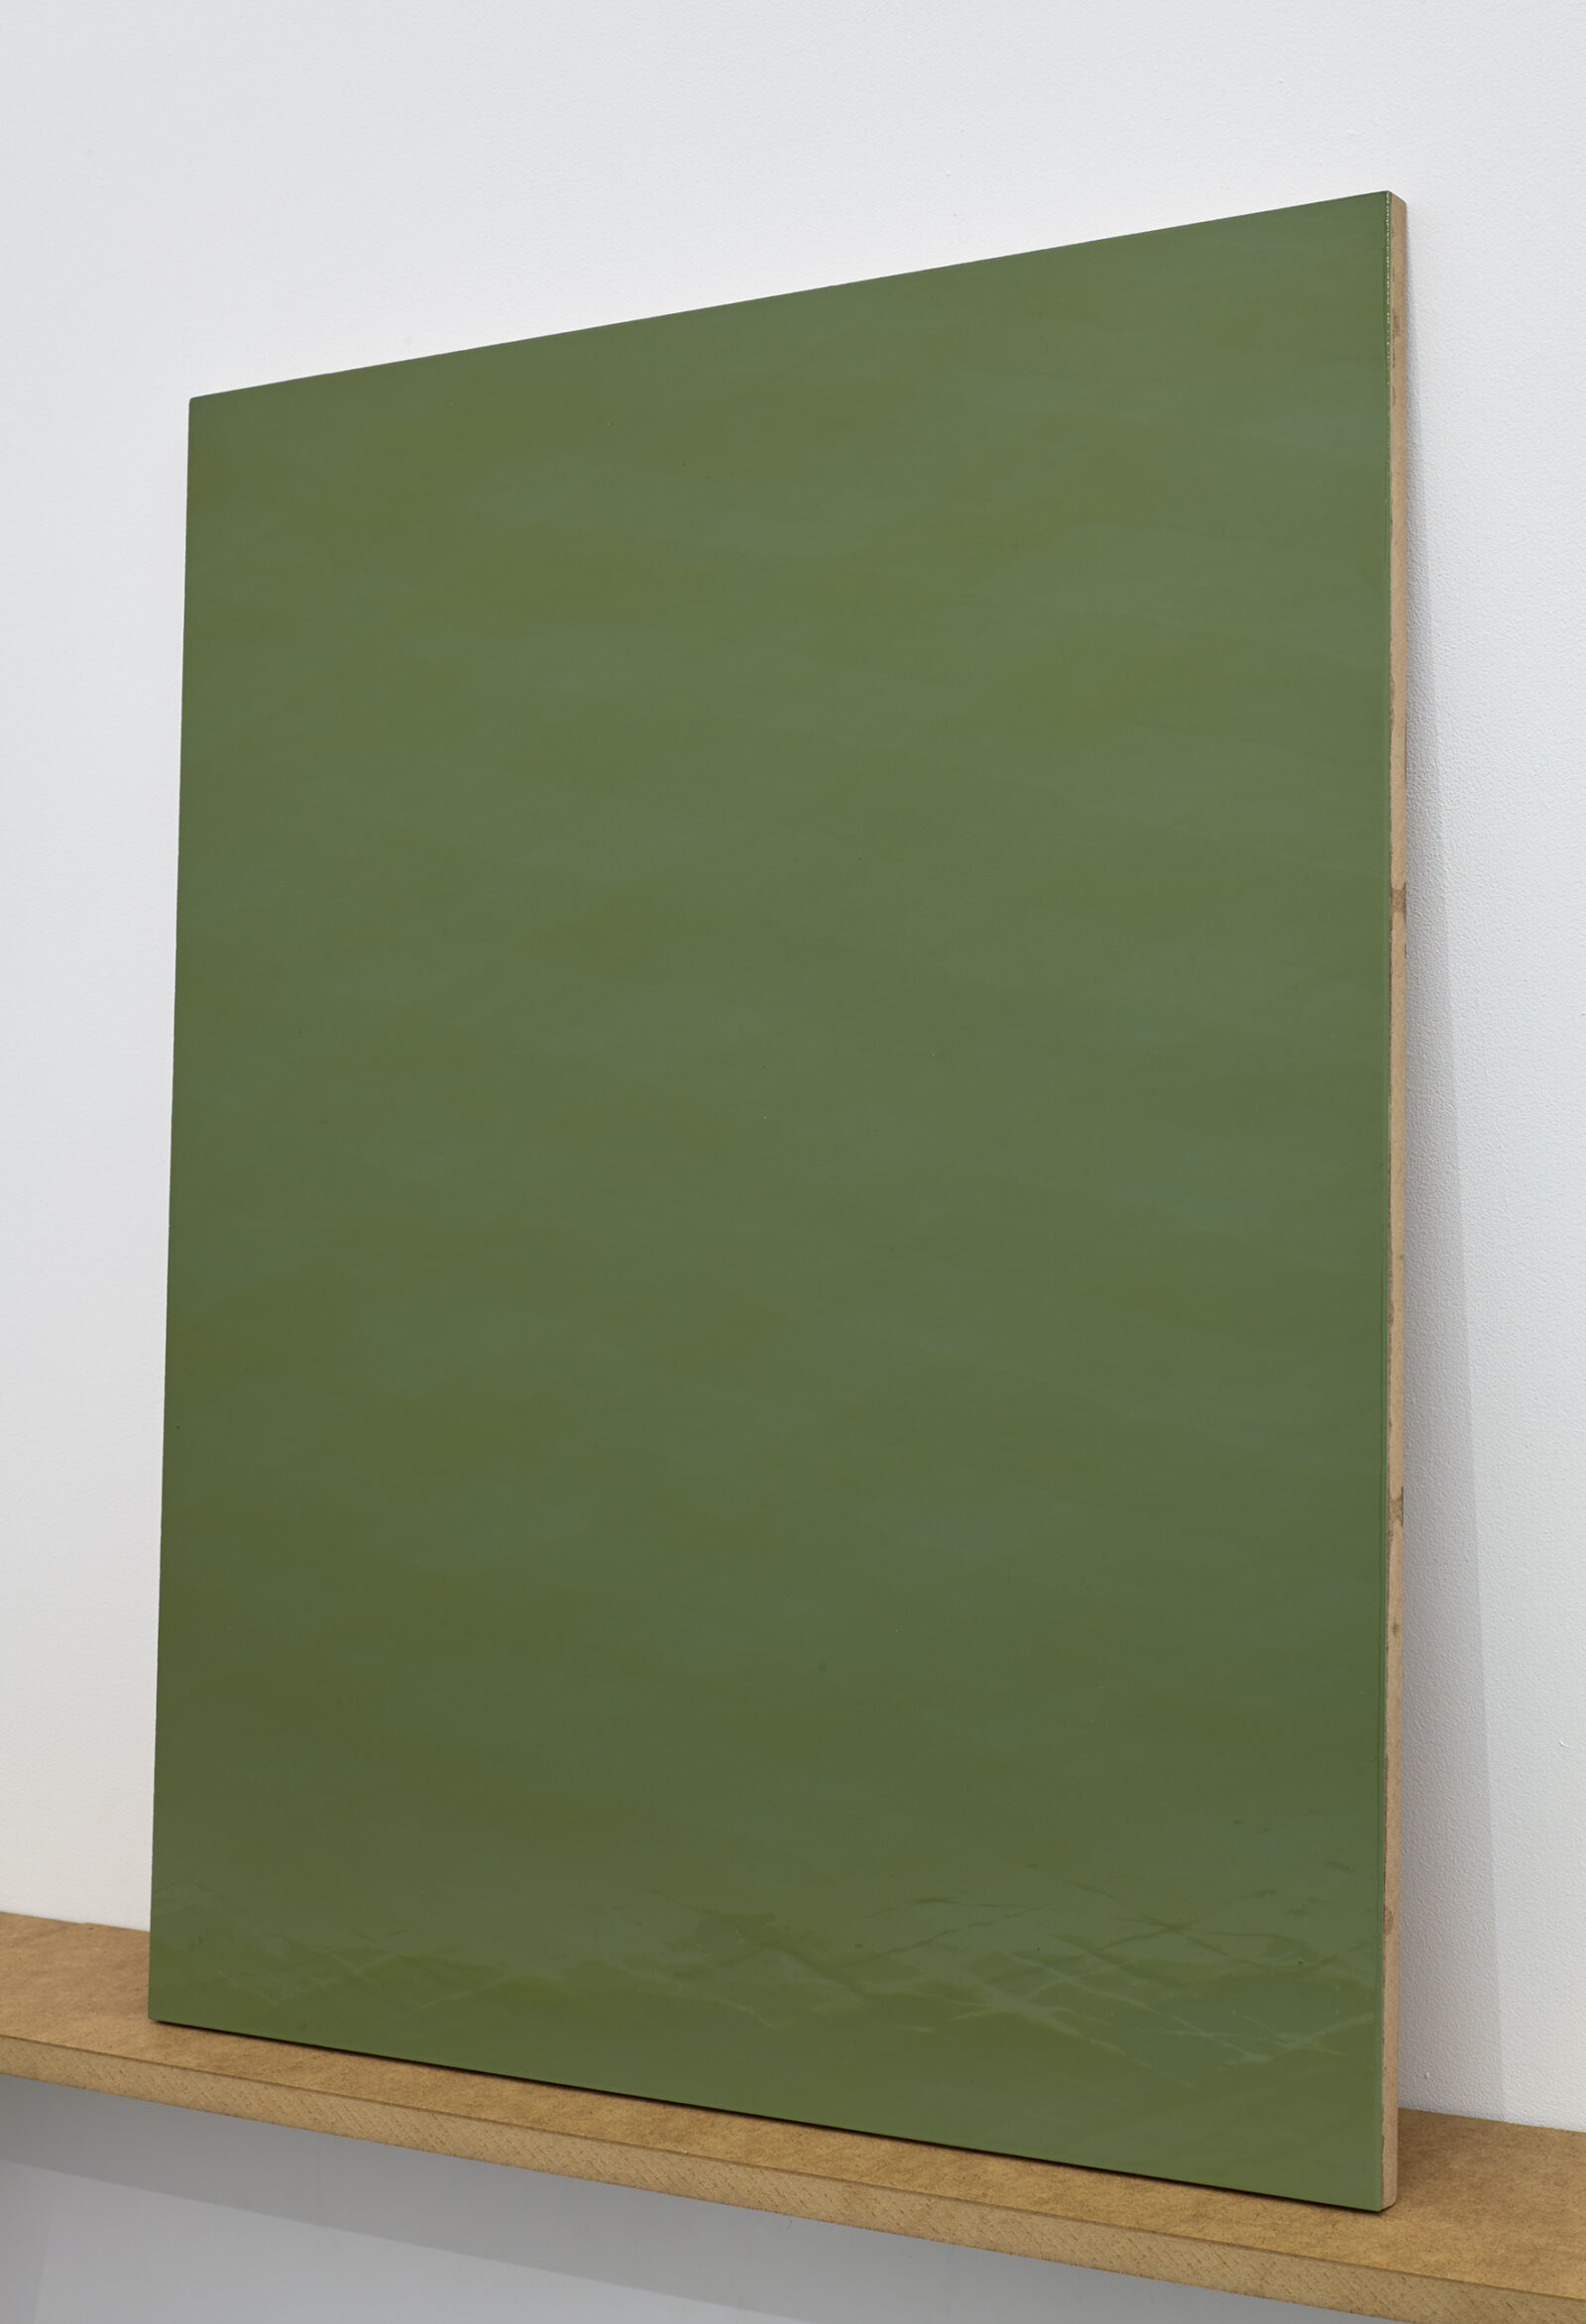 Katarzyna Przezwańska
Untitled
2015
acrylic, polyurethane, MDF
72 × 58 cm